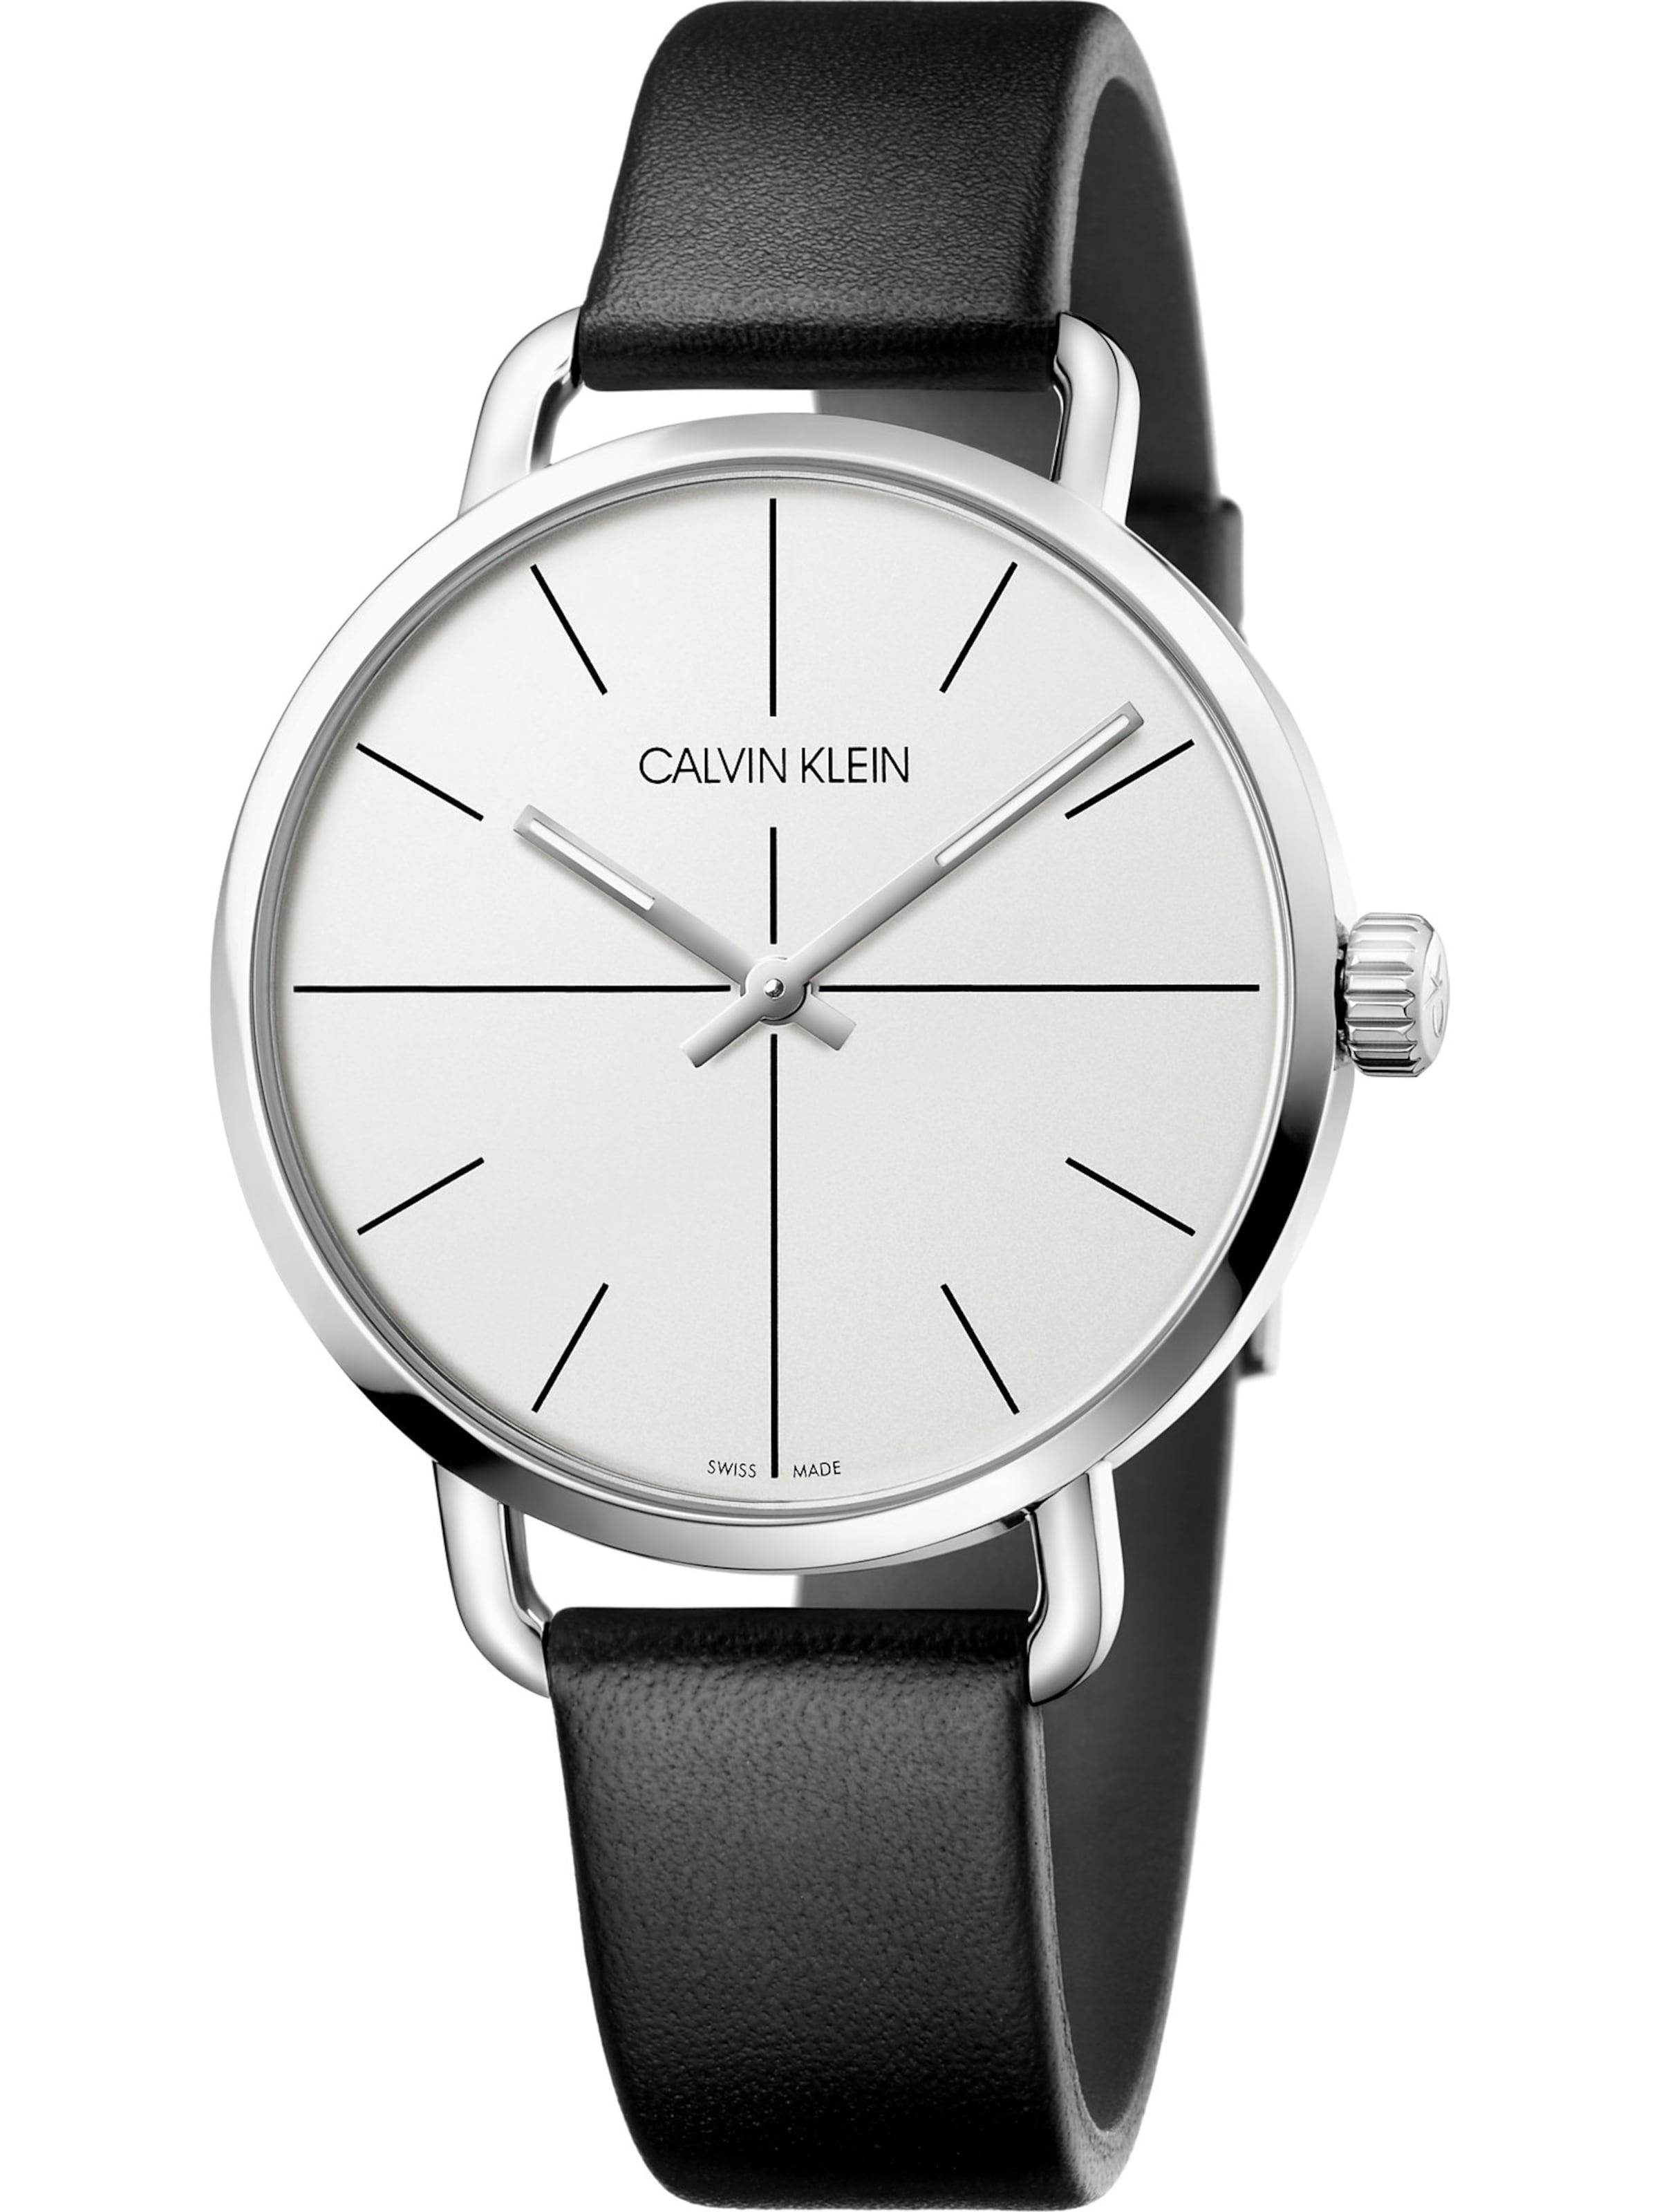 Männer Uhren Calvin Klein Uhr in Schwarz - RR12910